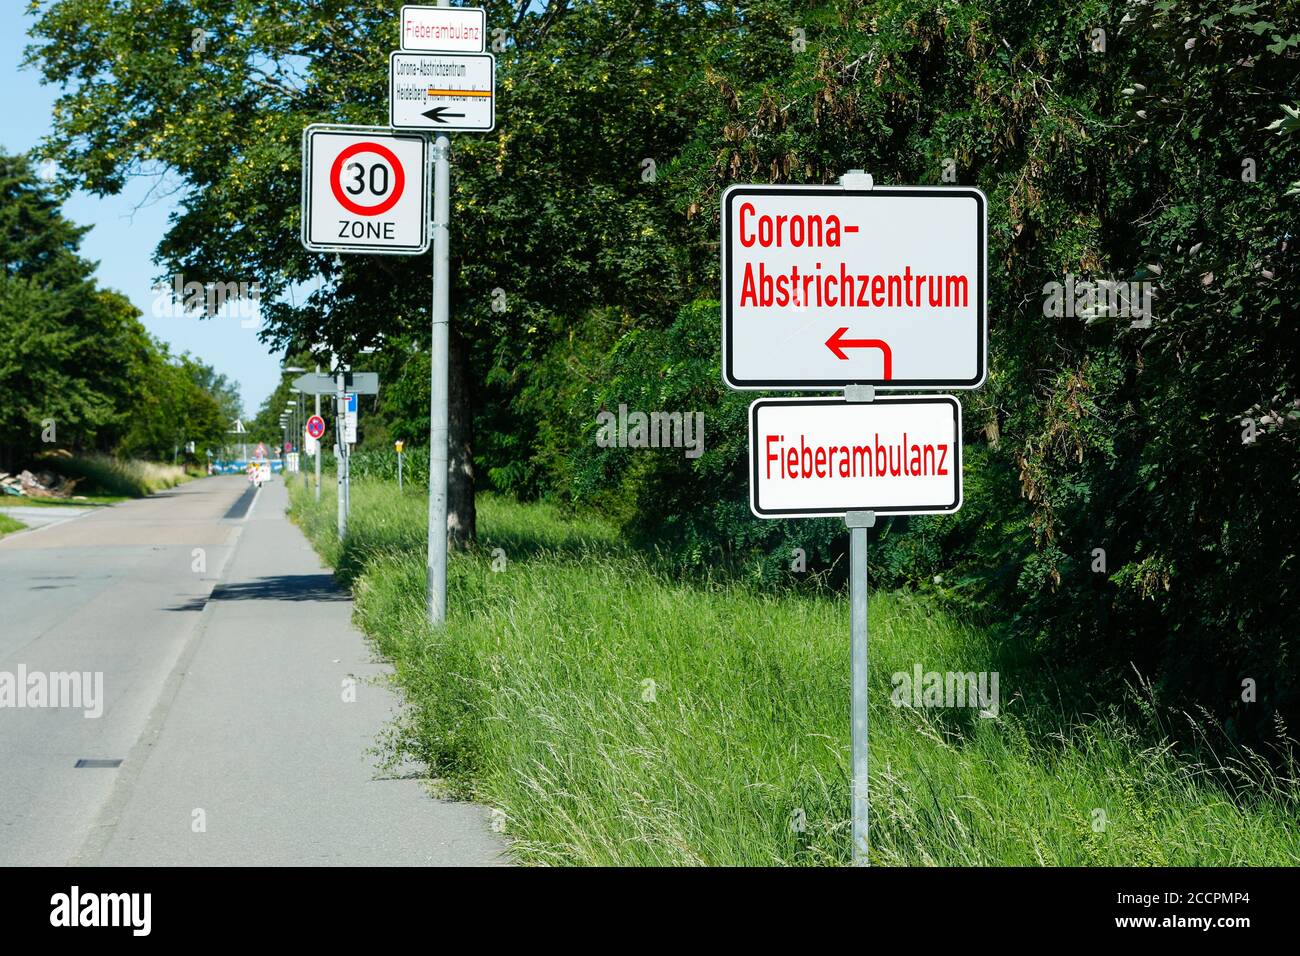 Heidelberg/Bavaria, Allemagne - 24 juin 2020 : Corona / Covid19 Drive in sign. En route vers la station d'essai de Heidelberg-Kirchheim (Allemagne). Banque D'Images